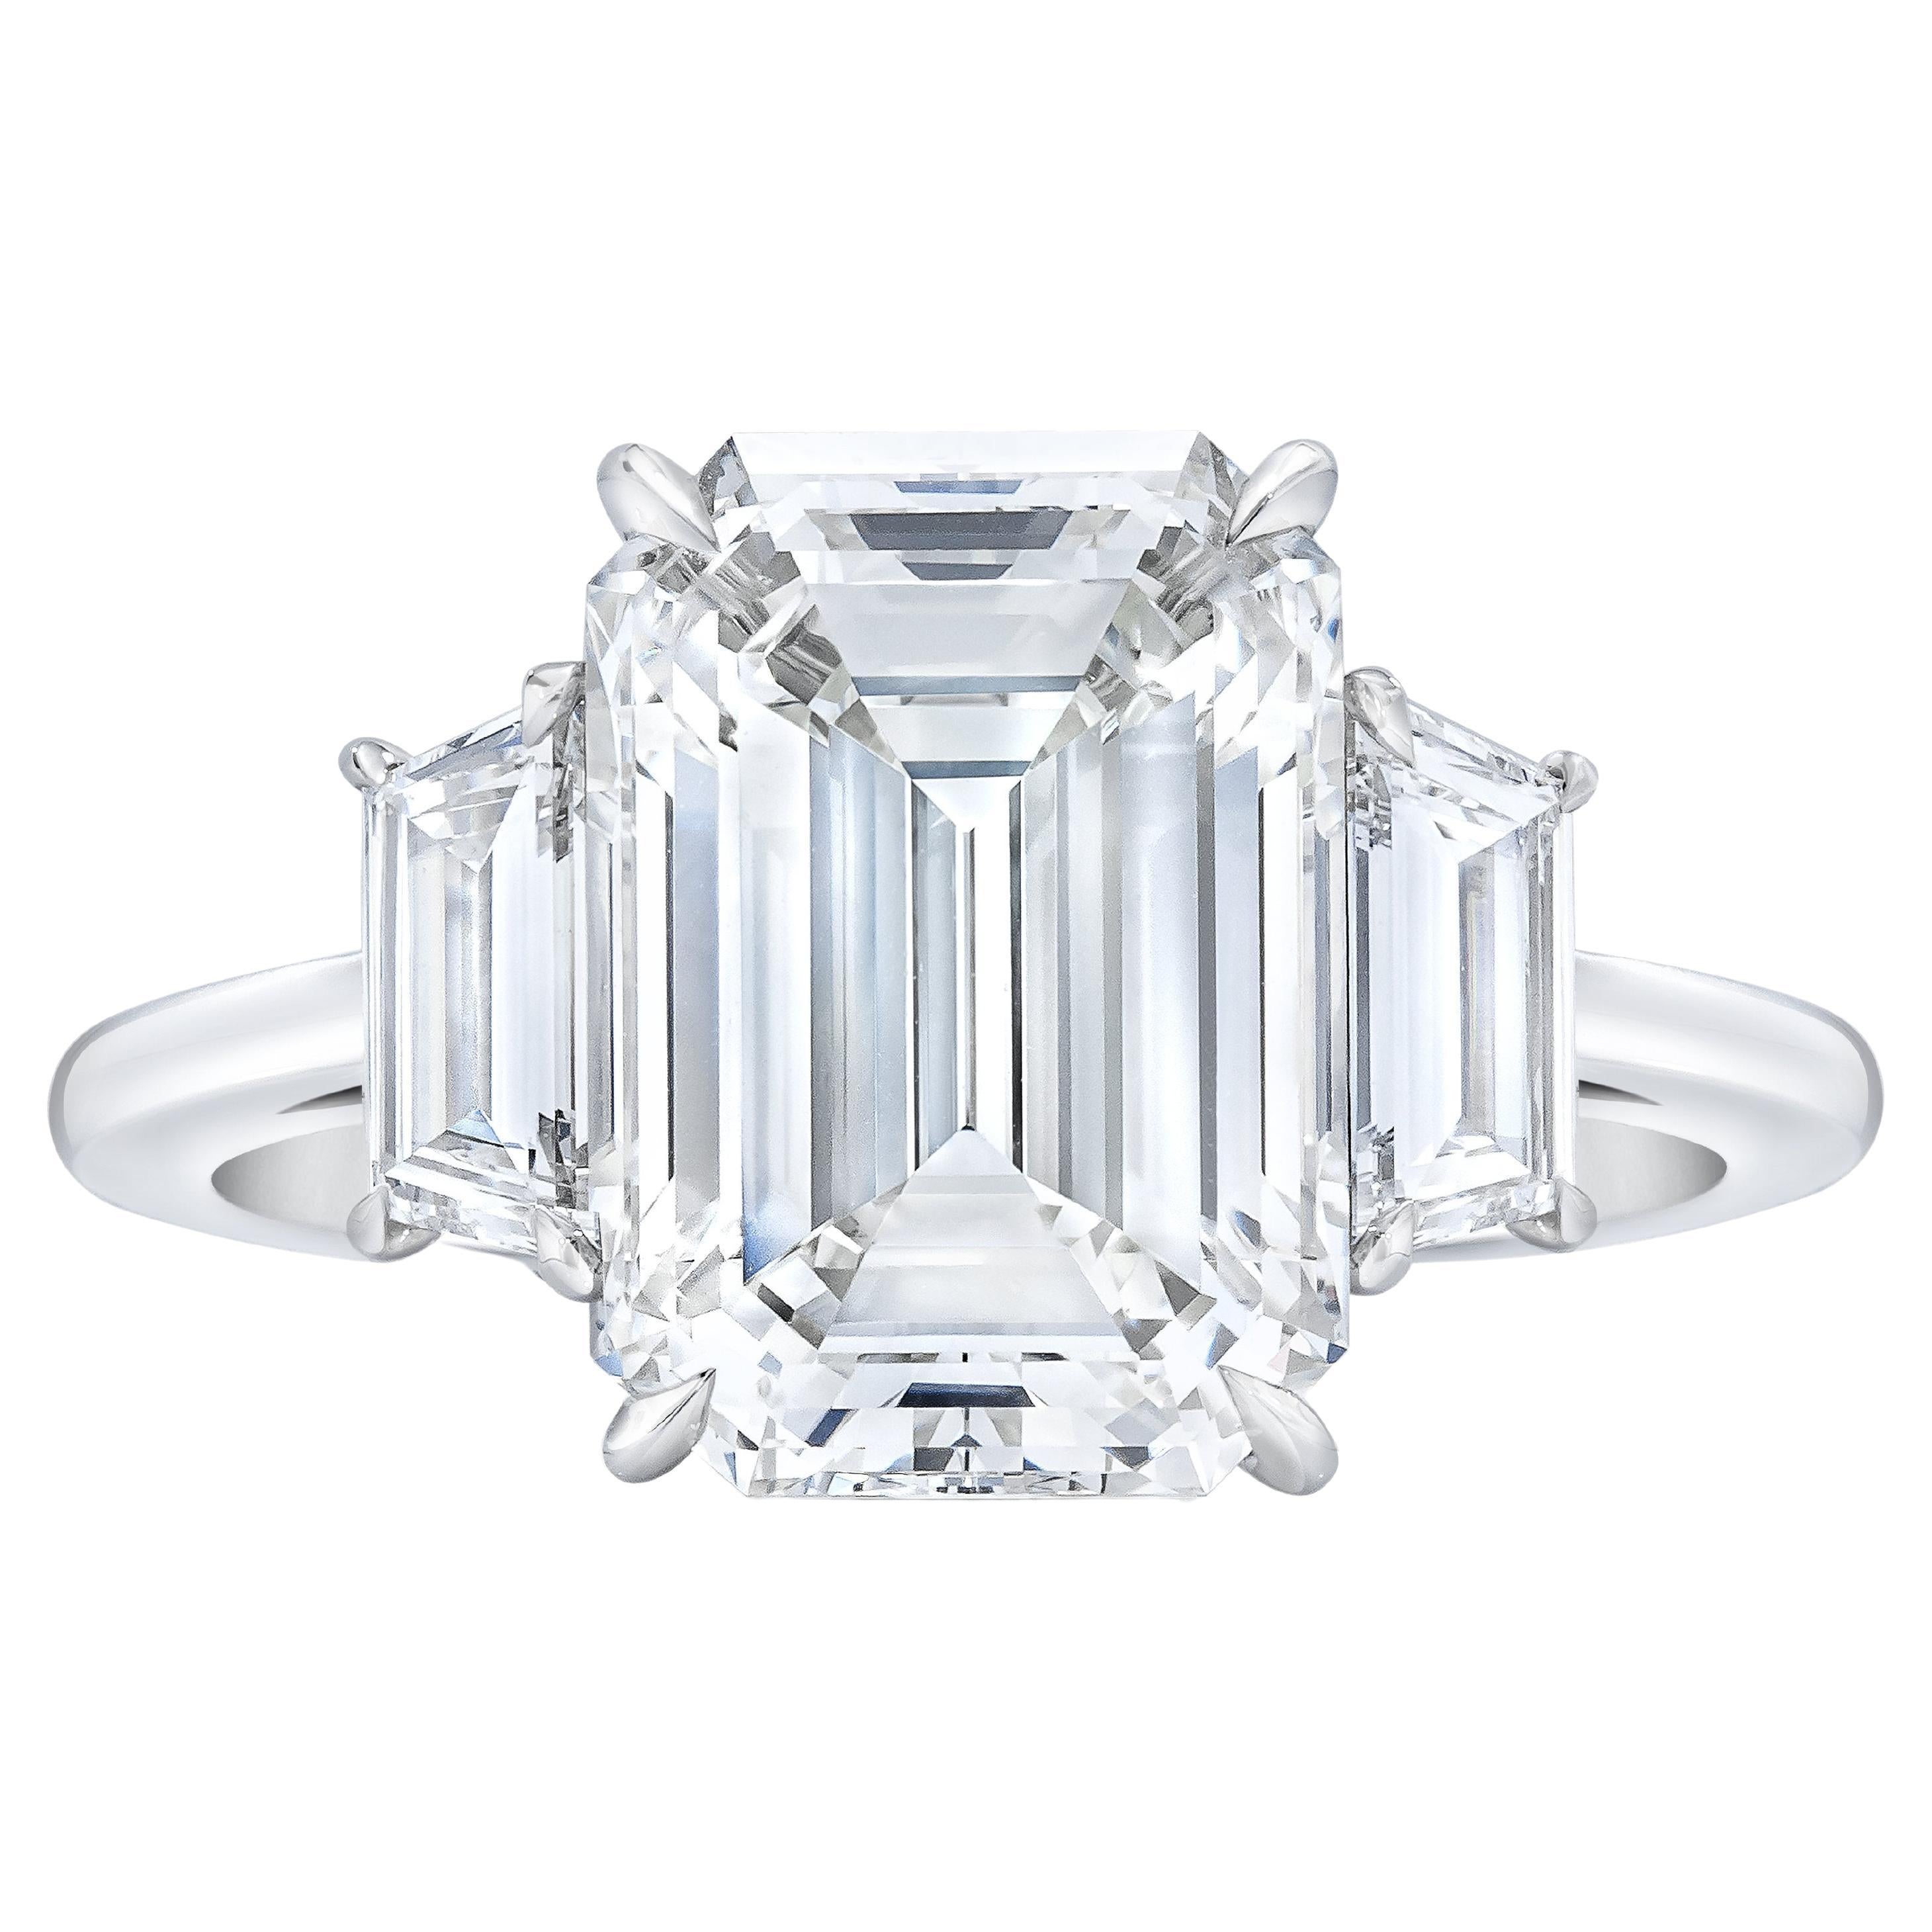 FLAWLESS GIA Certified 4 Carat Emerald Cut Diamond Ring